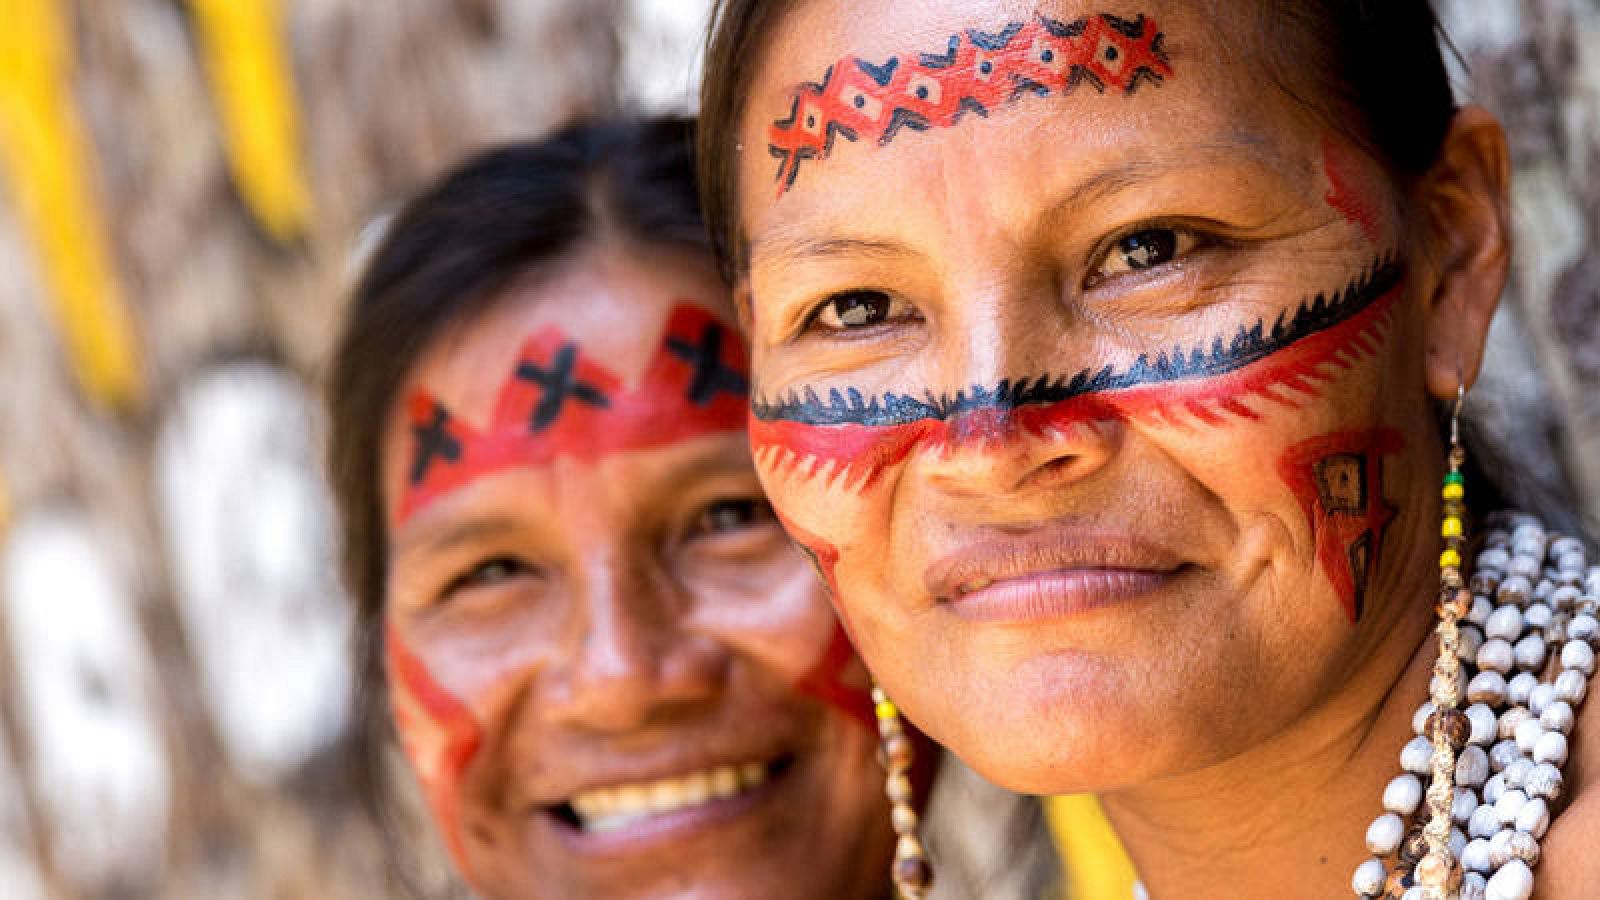  Dos mujeres indígenas sonríen con la cara pintada al modo tradicional.